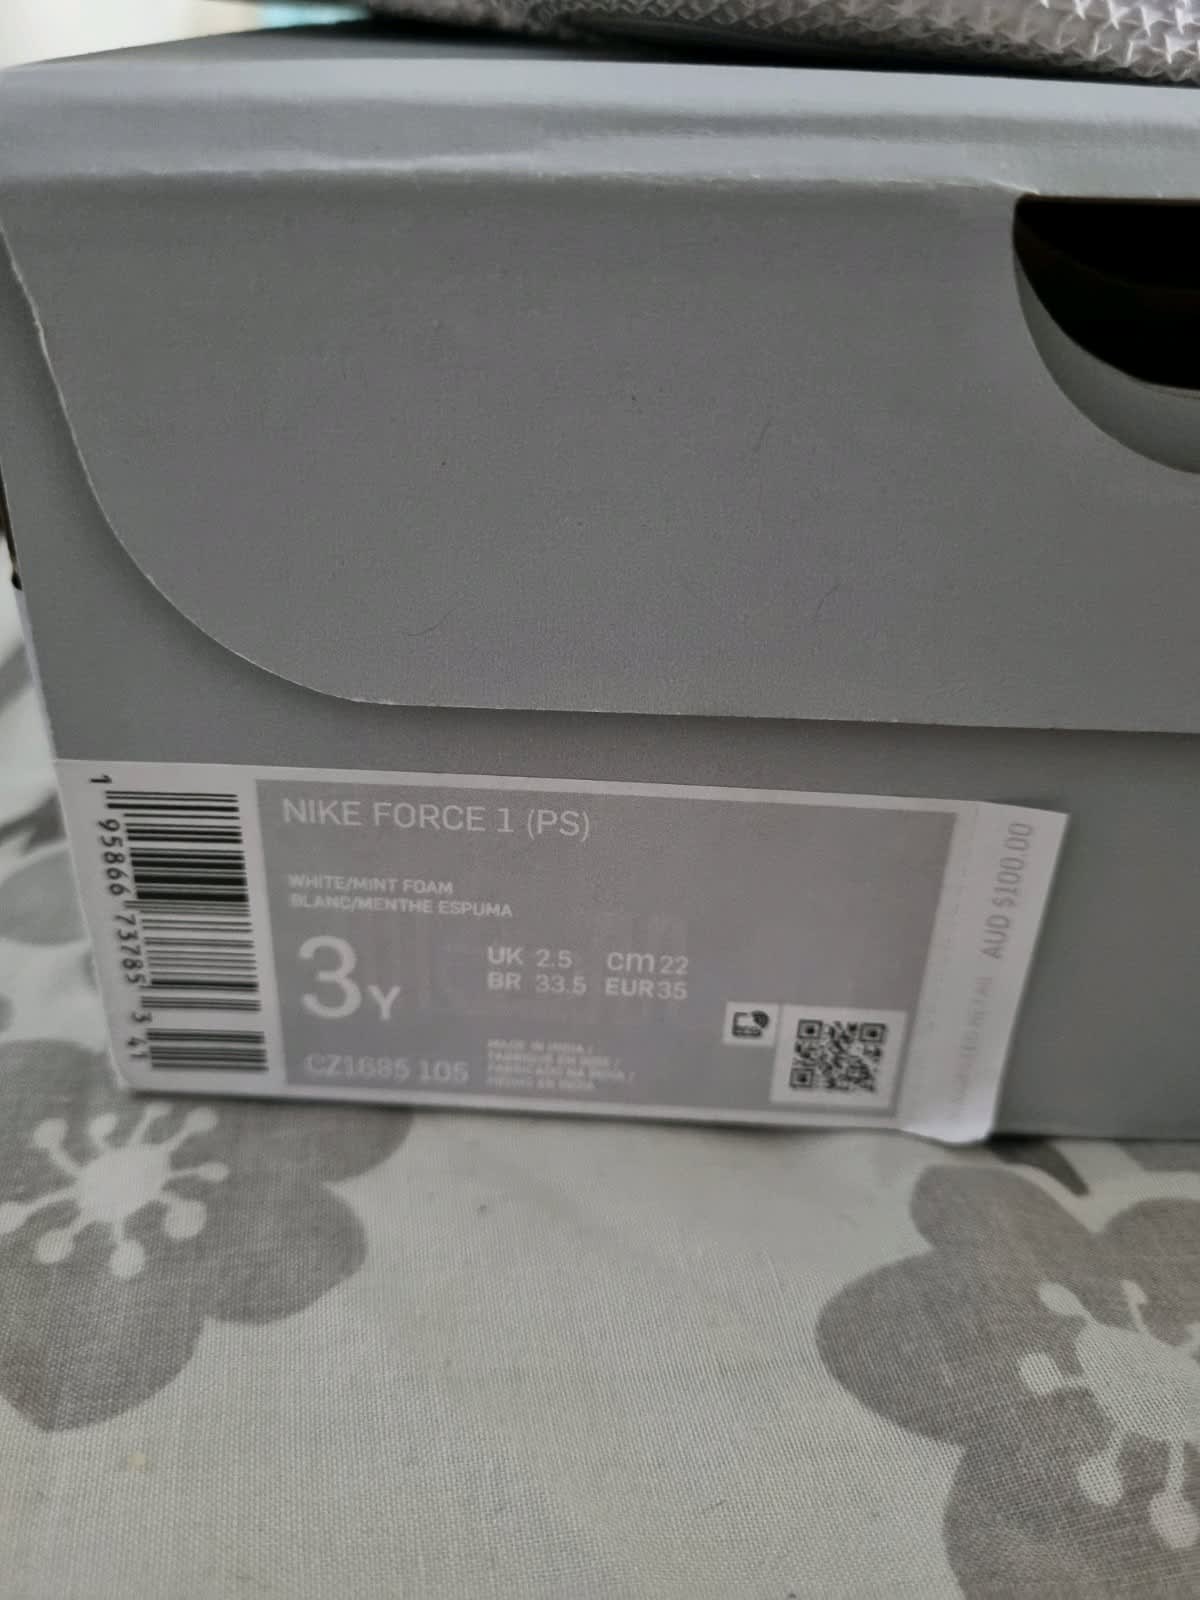 Buy Force 1 PS 'White Mint Foam' - CZ1685 105